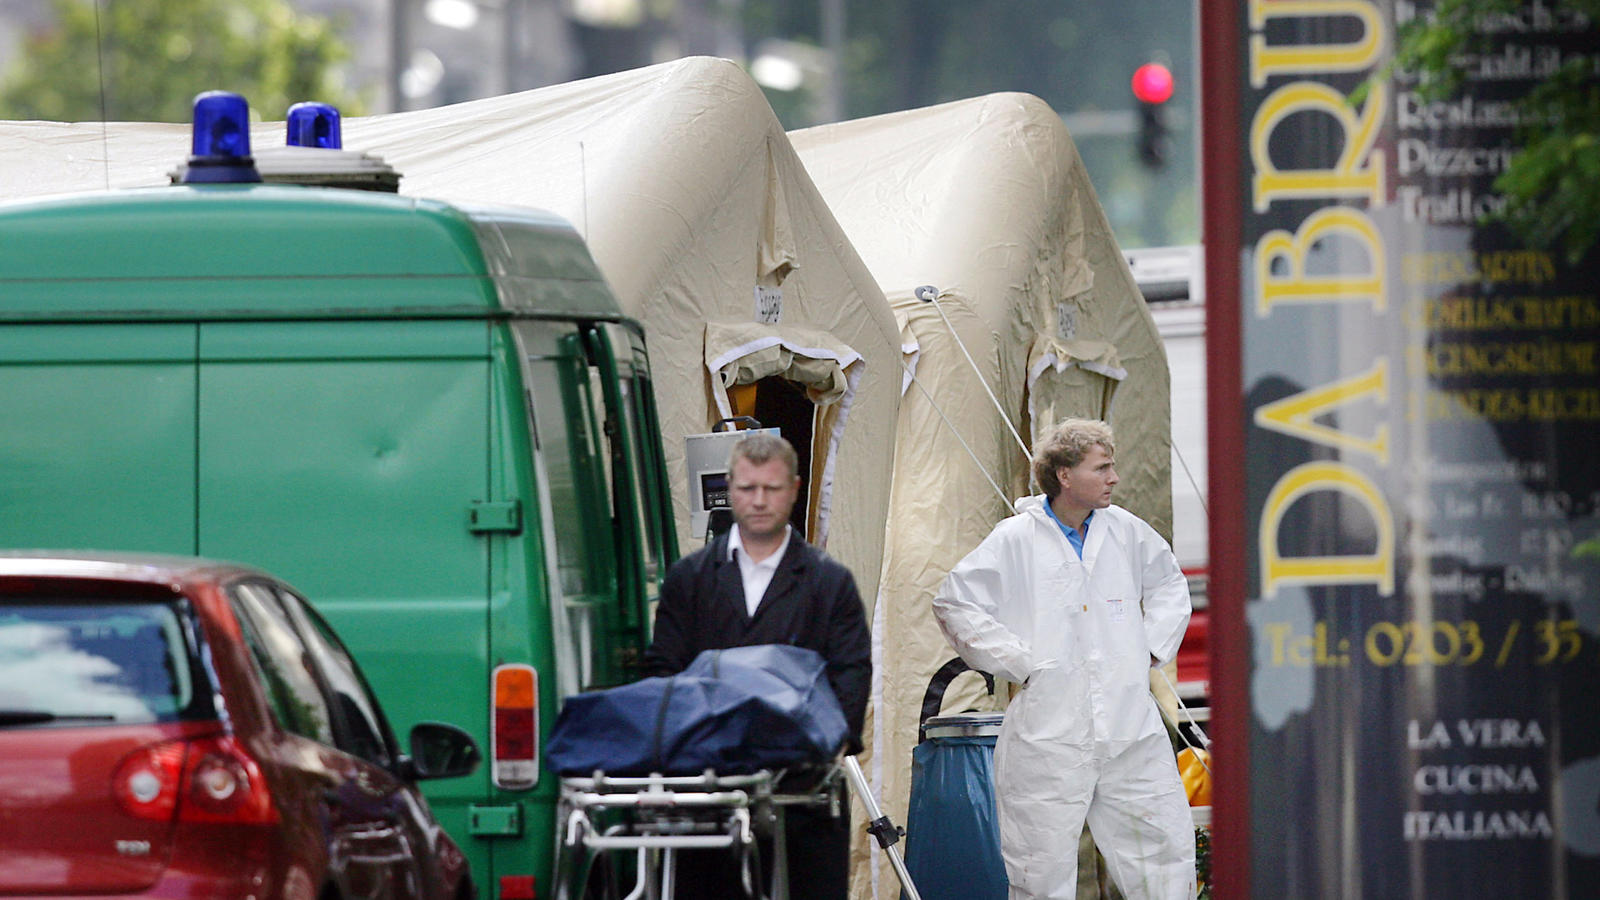 ARCHIV - Ein Bestatter schiebt am 15.08.2007 in Duiburg (Nordrhein-Westfalen) eine Trage mit einer verdeckten Leiche von einem Tatort. Zehn Jahre nach den Mafiamorden von Duisburg beschäftigen sich Politiker, Journalisten, Wissenschaftler und engagie